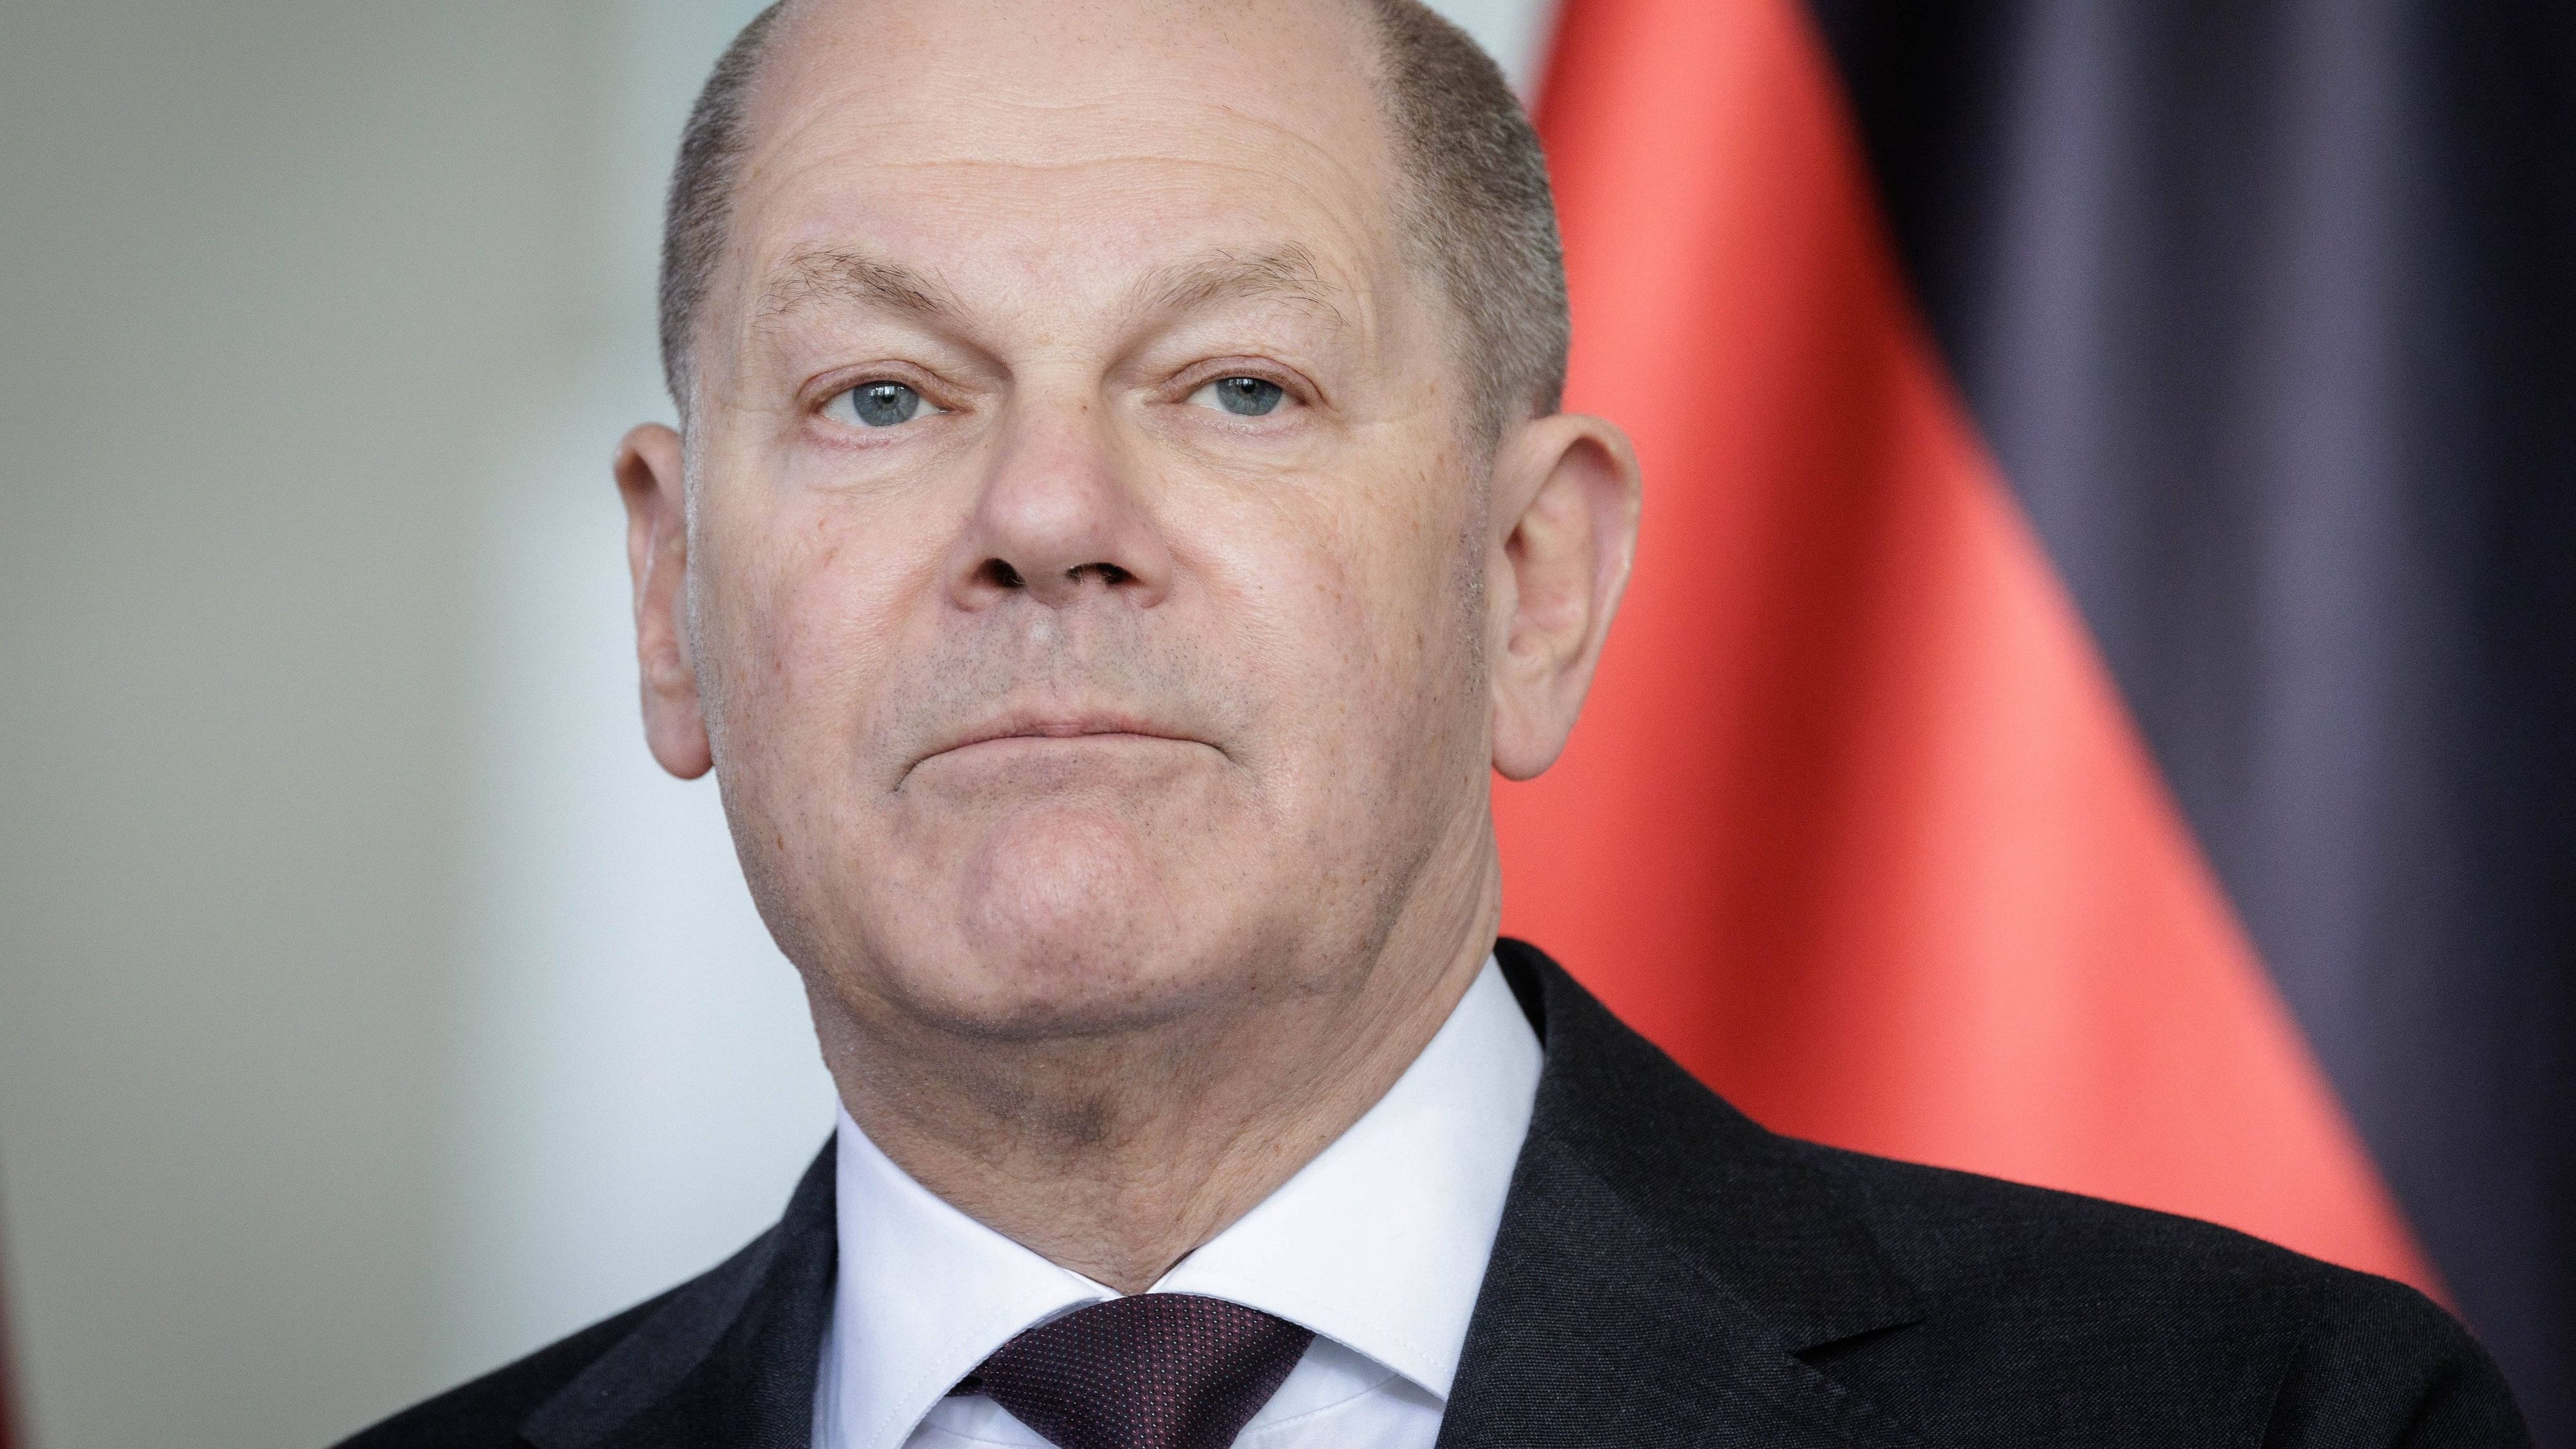 BDI-Präsident Russwurm: “Waren zwei verlorene Jahre” – Kritik an Scholz